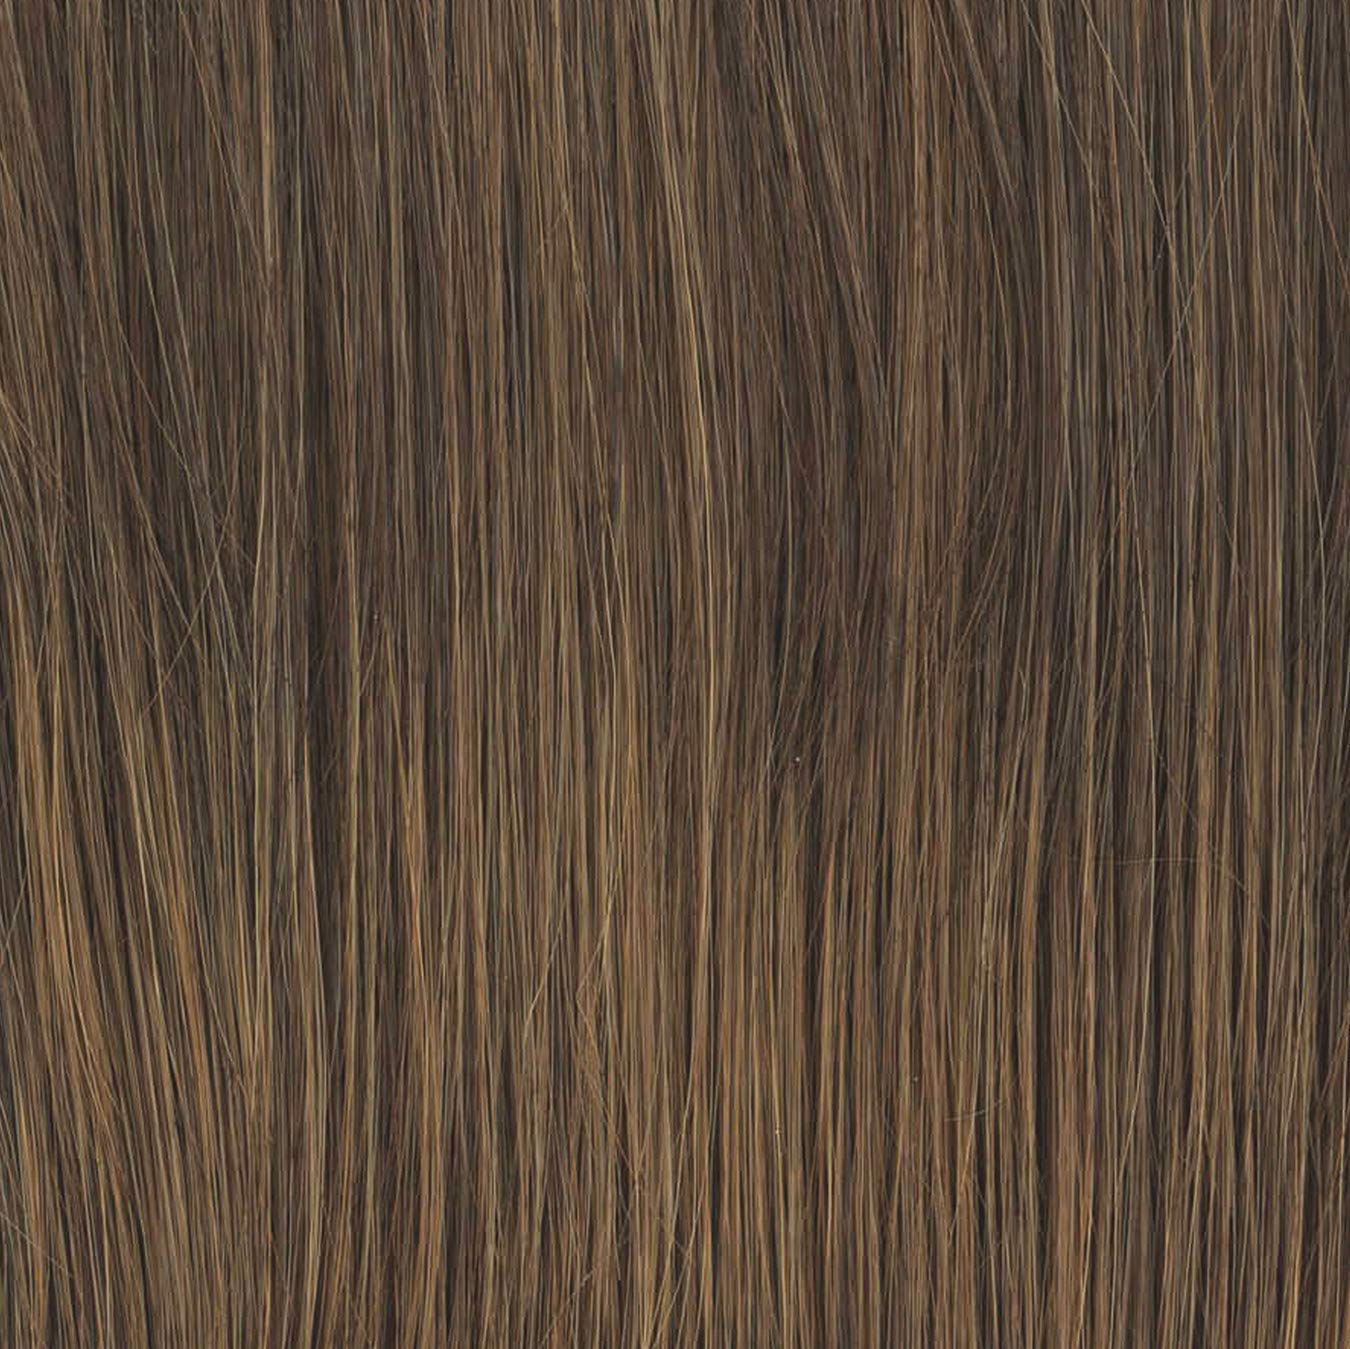 Classic Cut - Wig by Raquel Welch